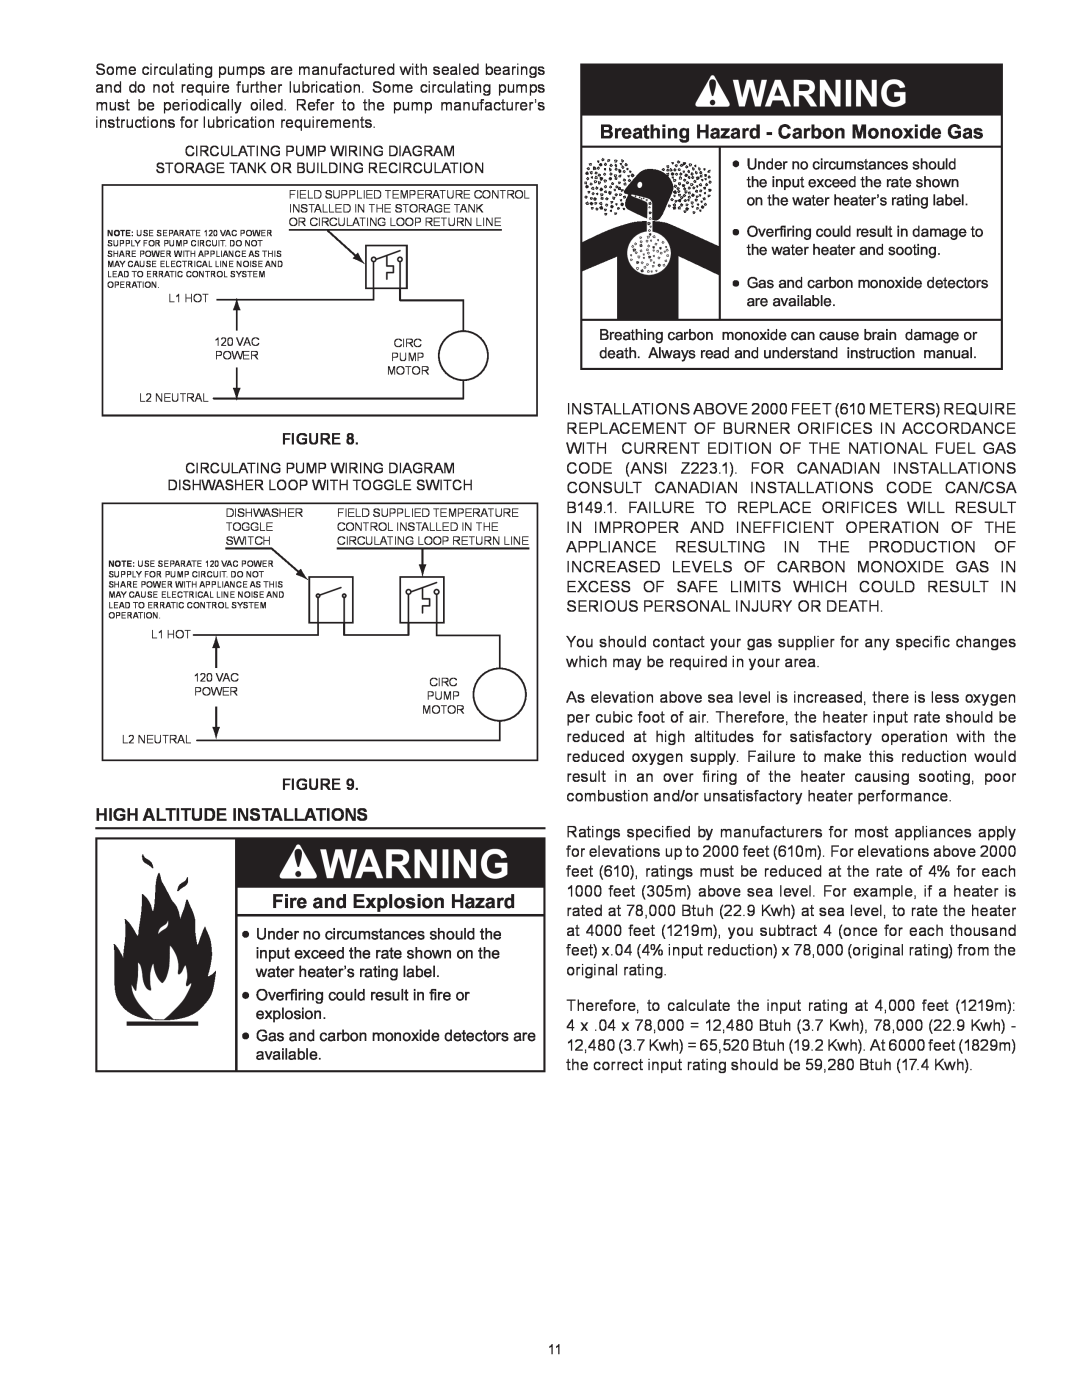 Reliance Water Heaters N71120NE, N85390NE Breathing Hazard - Carbon Monoxide Gas, Fire and Explosion Hazard, Figure 